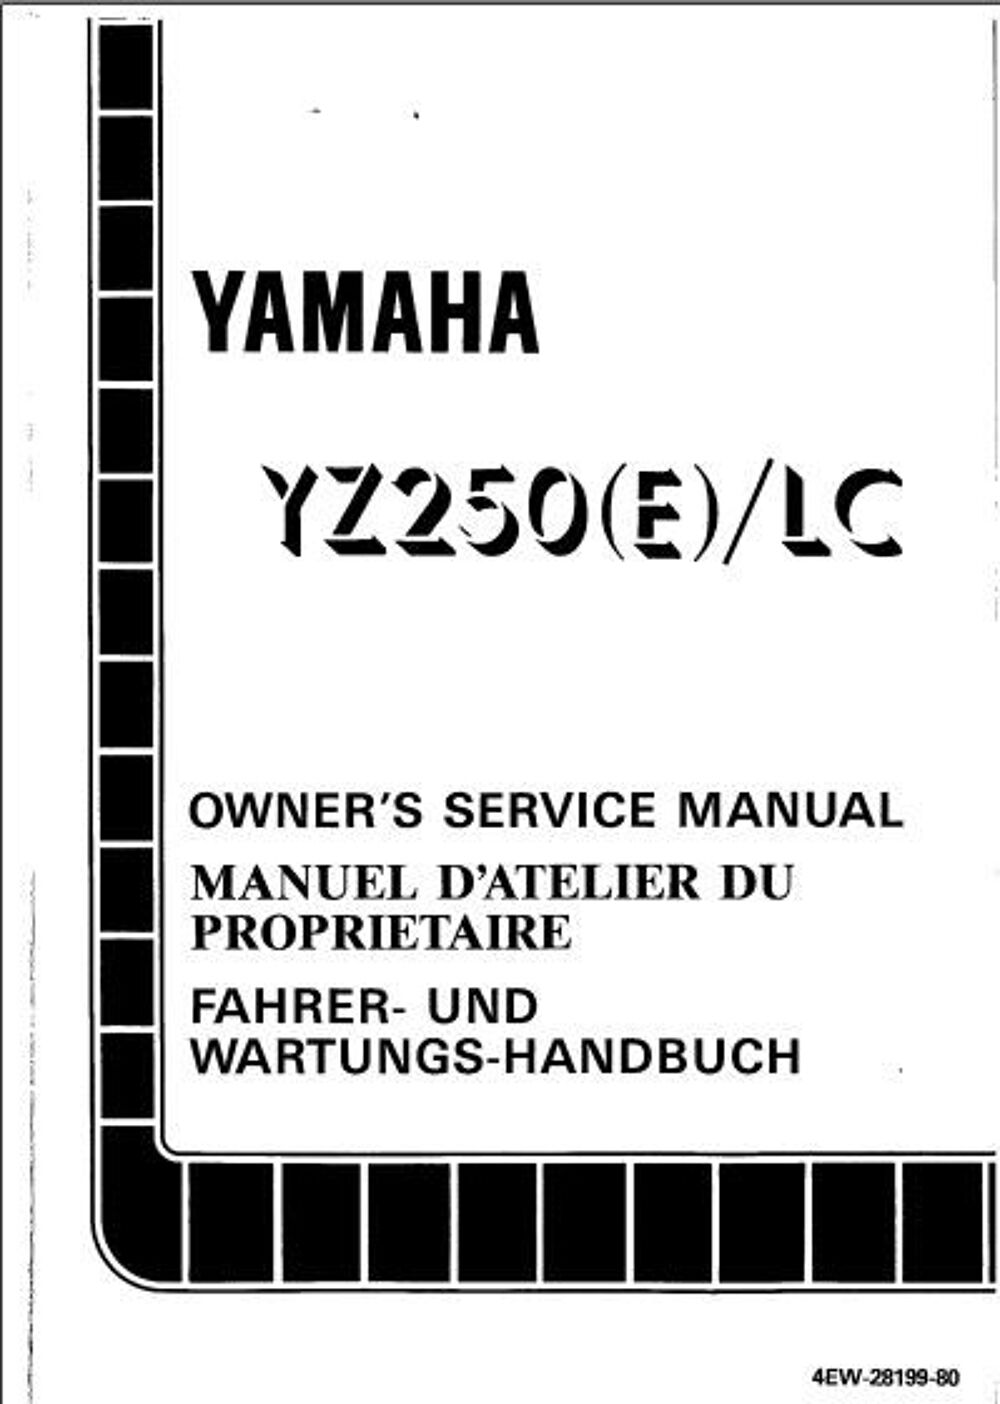 Manuel d'atelier yamaha 250 YZ 1993 582 pages 